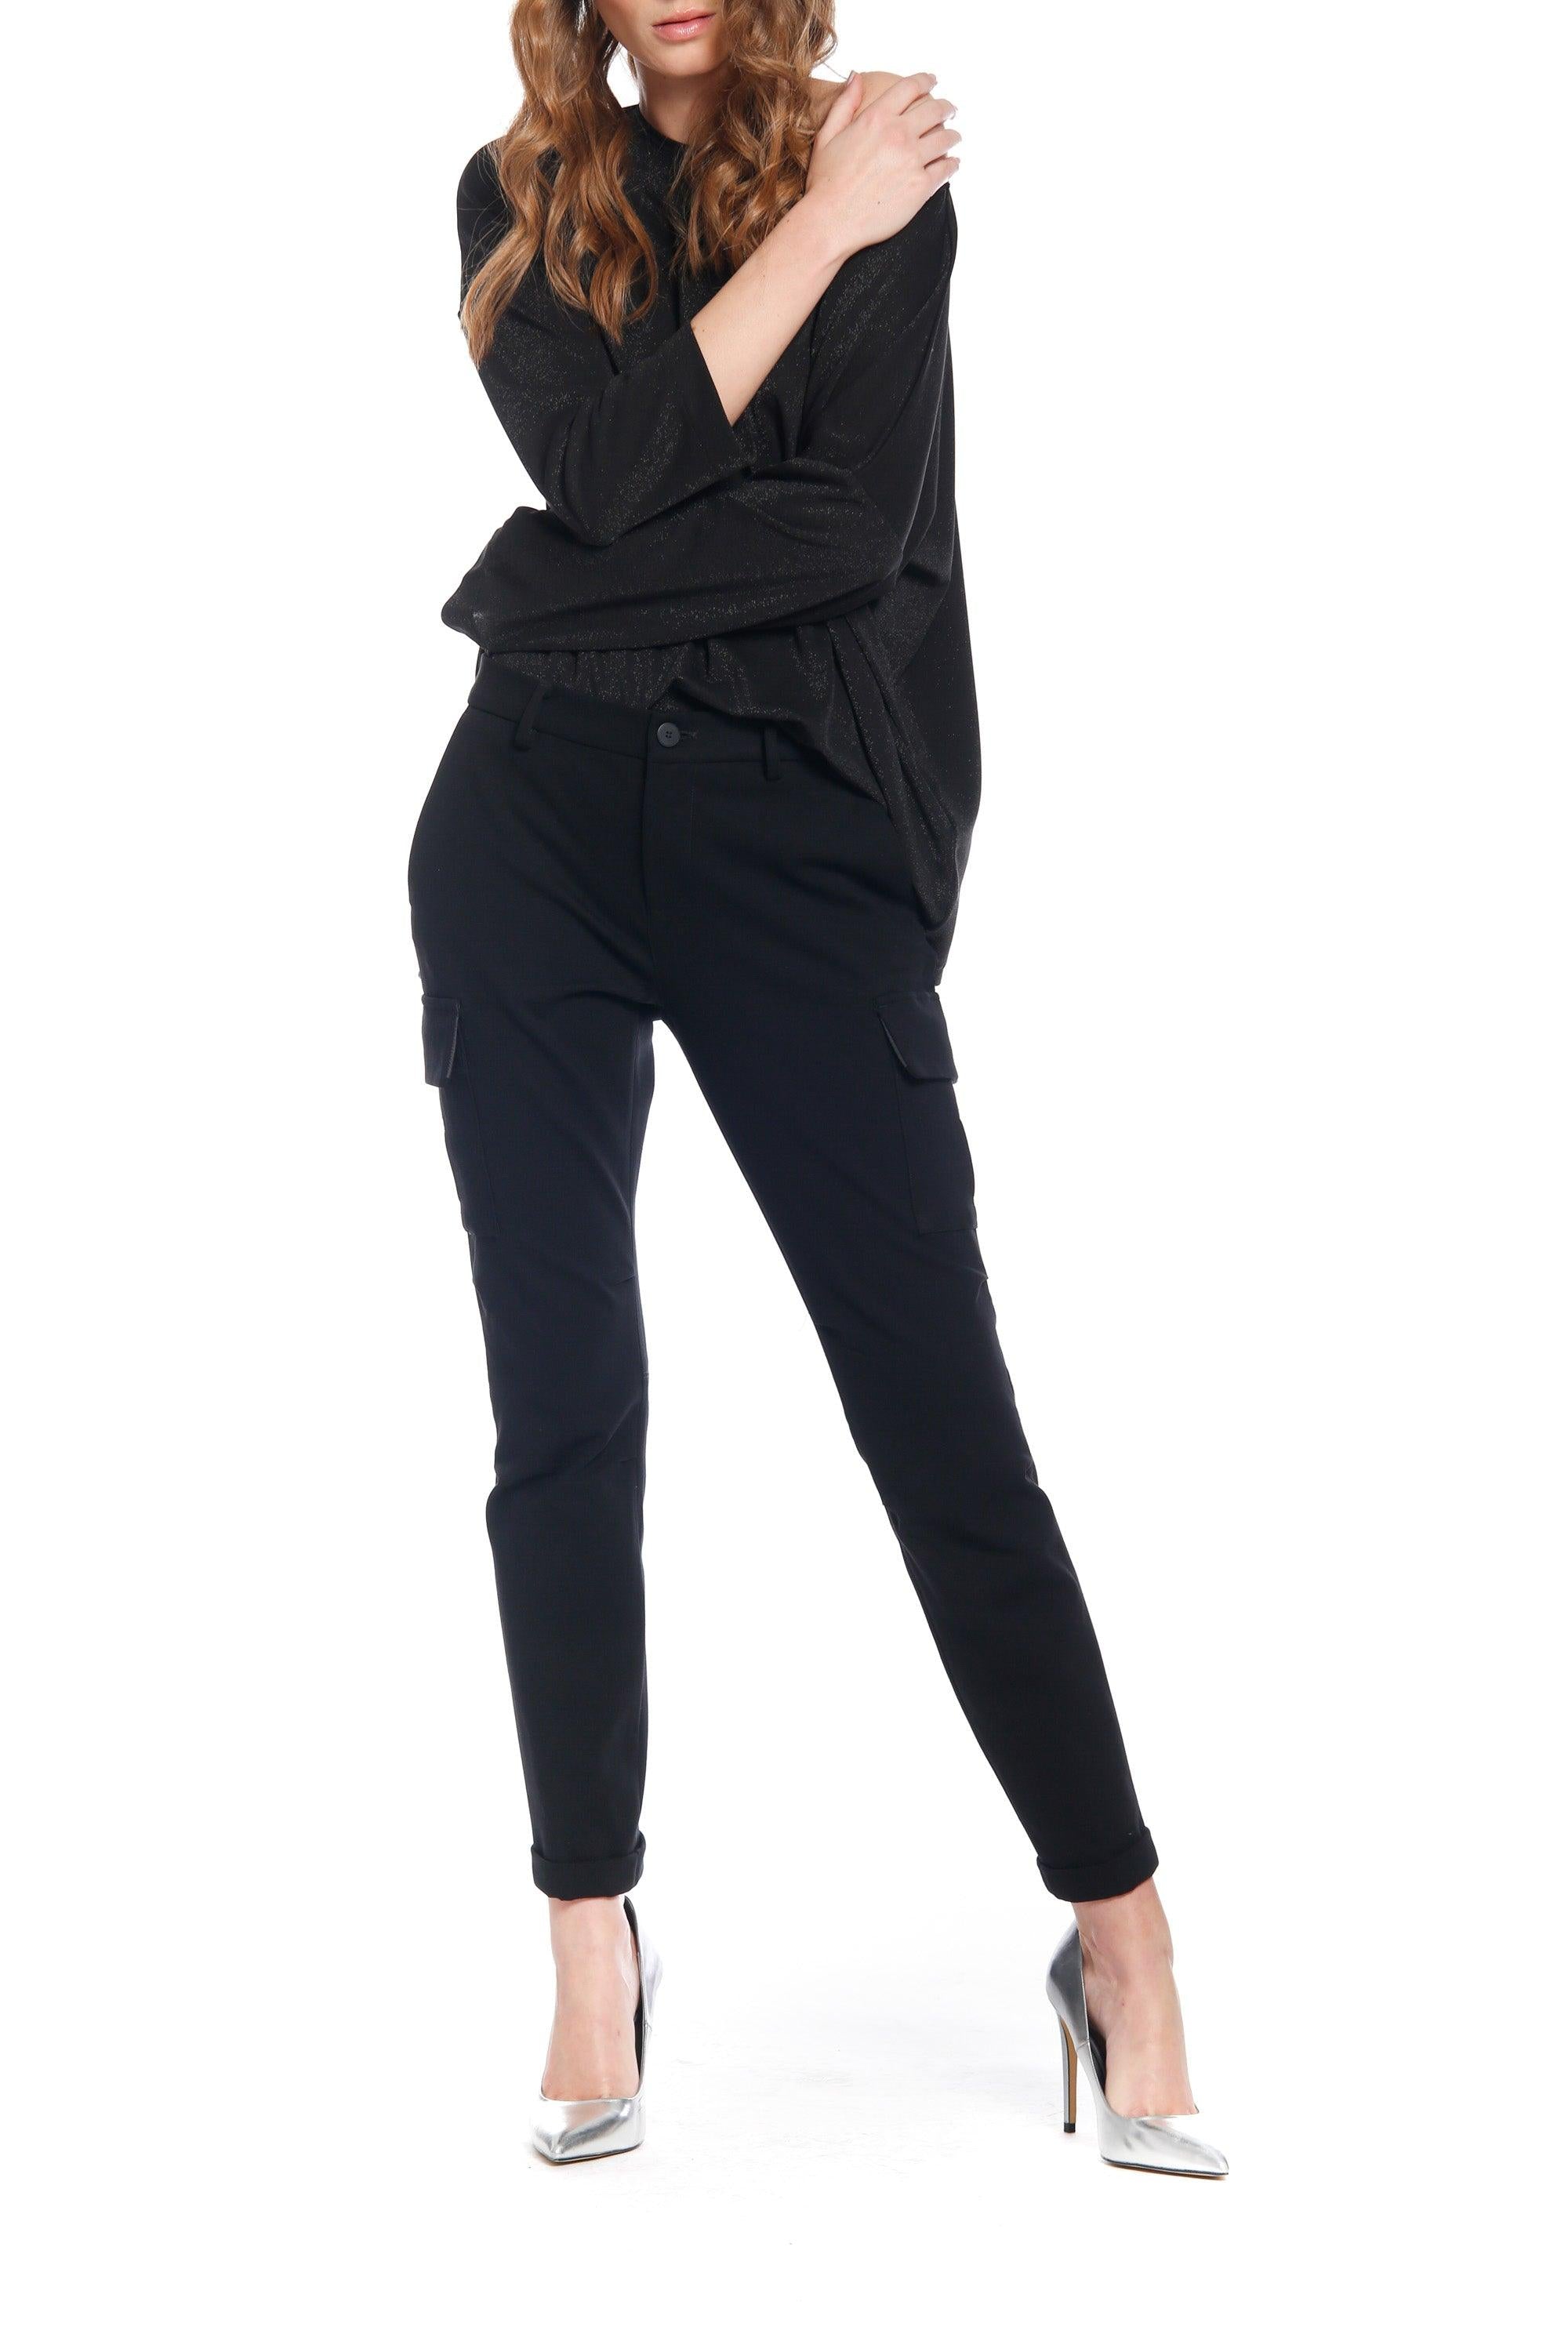 Image 2 de pantalon cargo femme en jersey couleur noir Chile City de Mason's